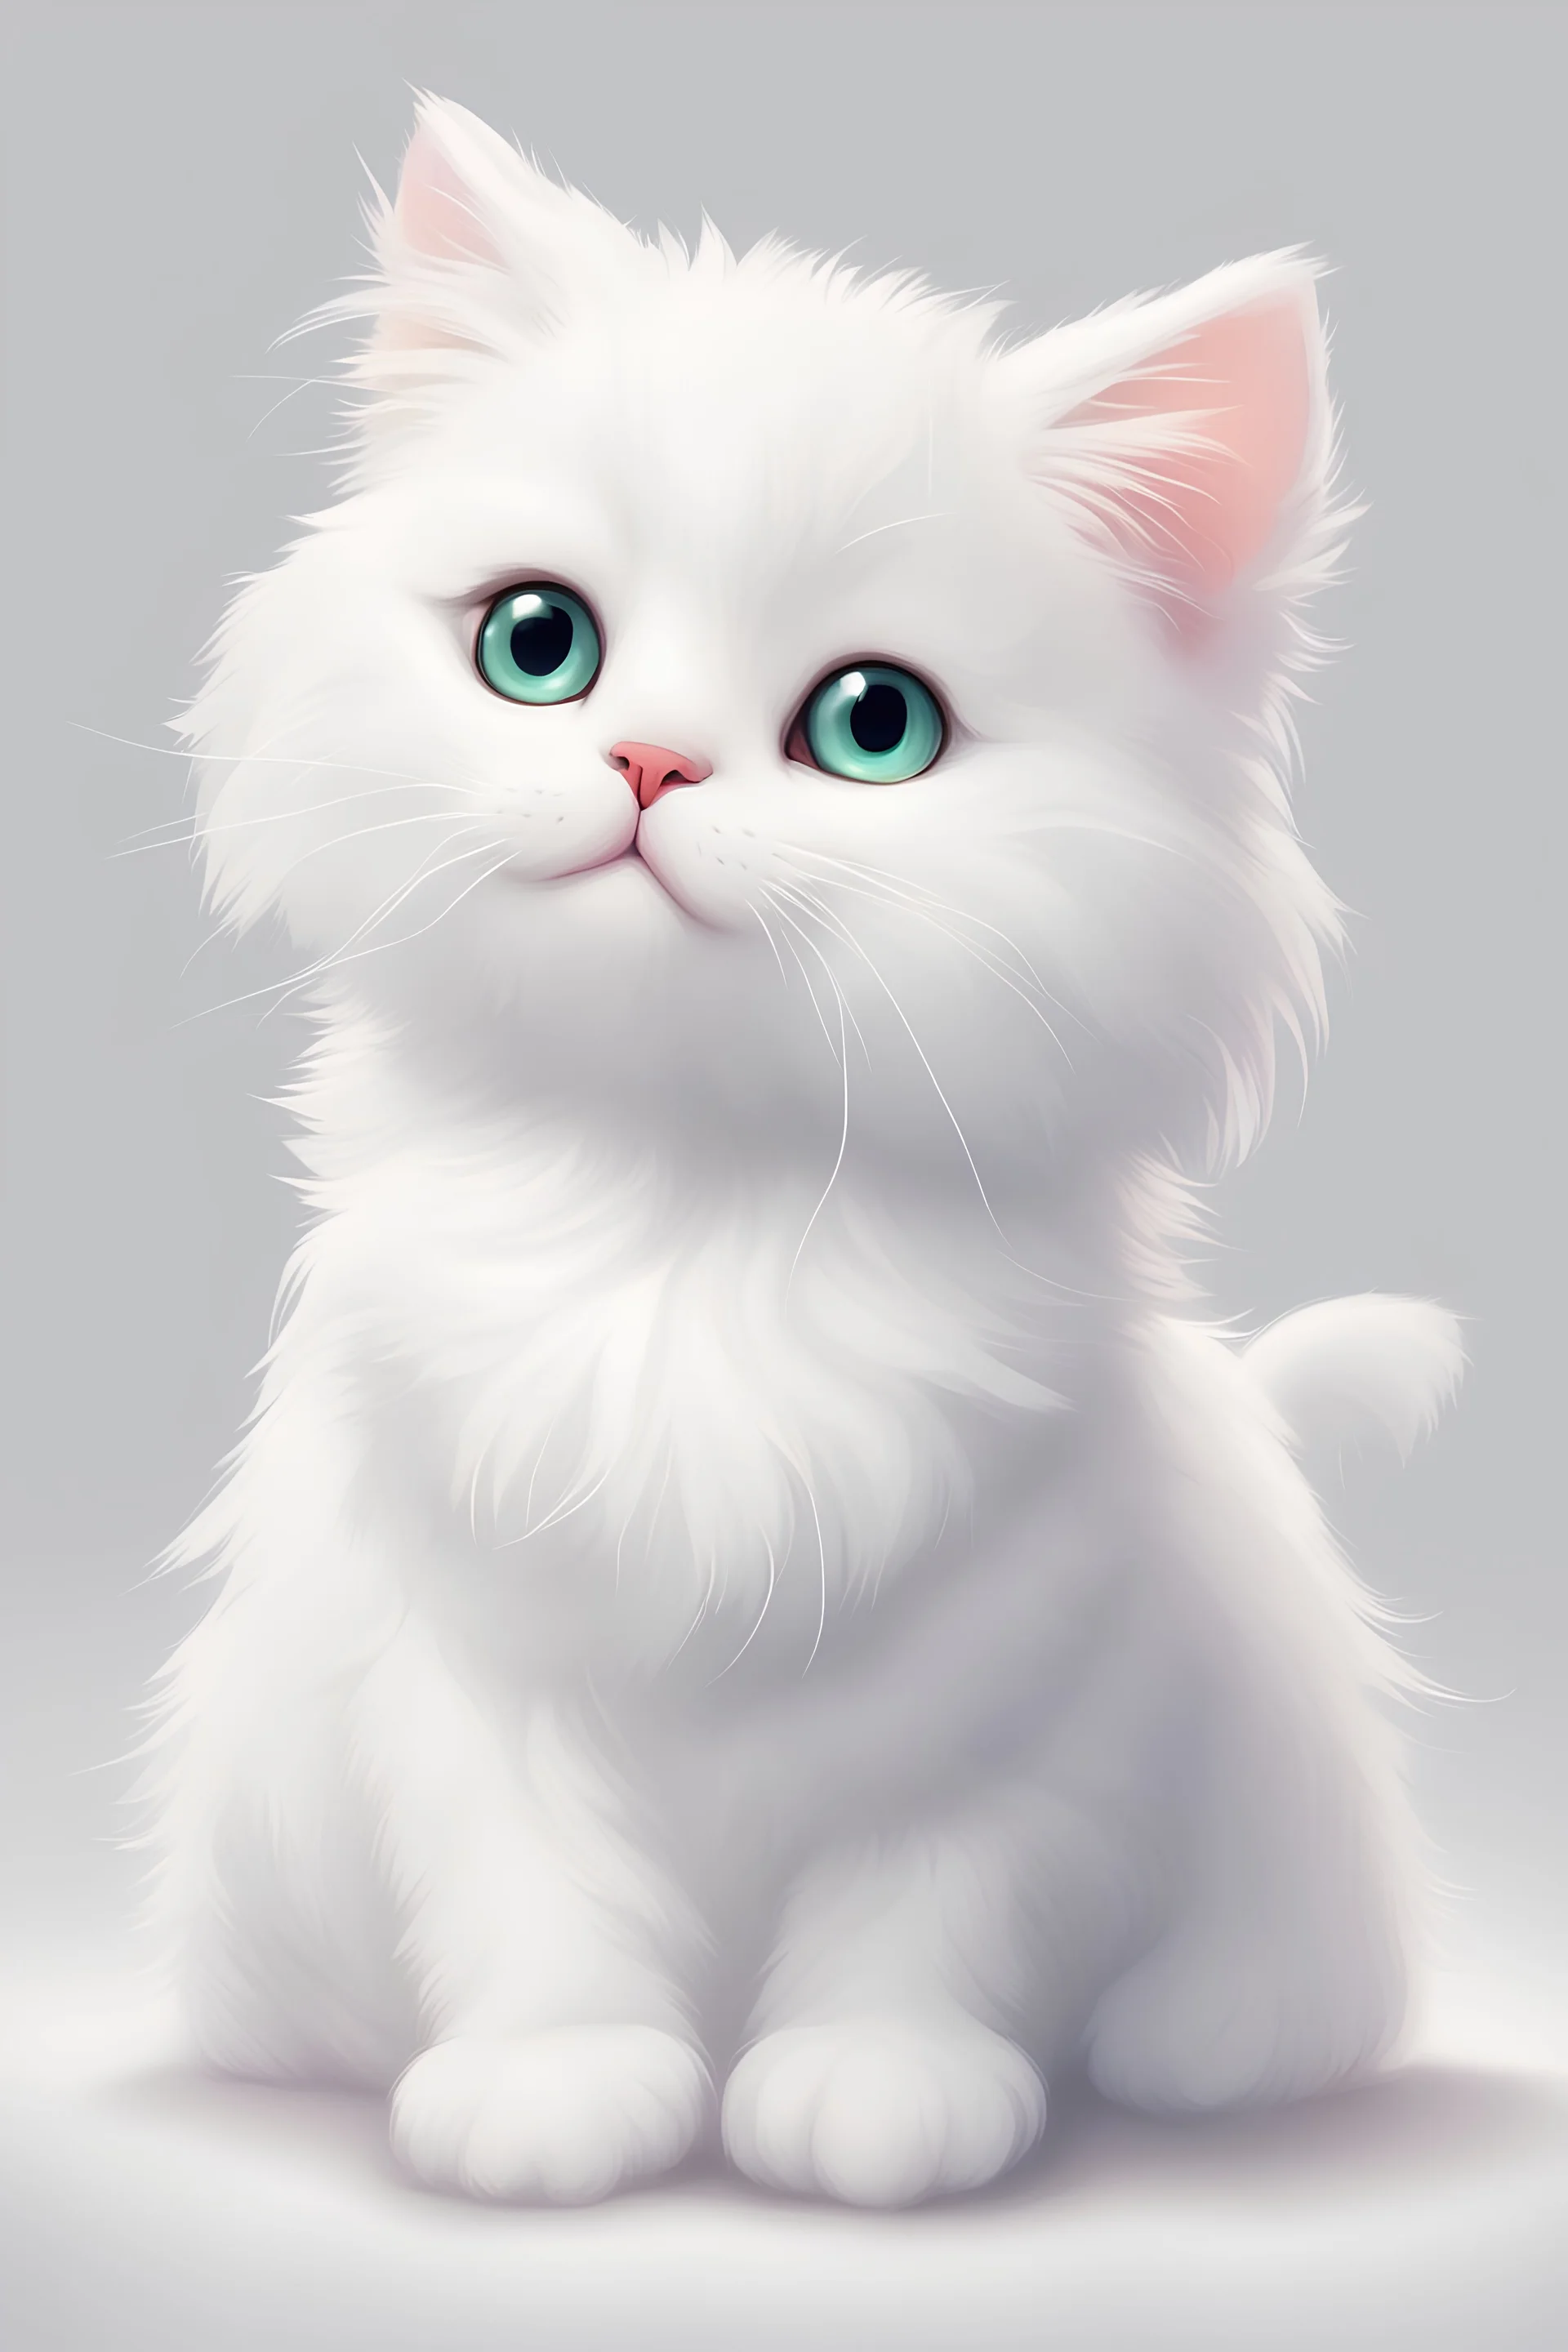 Cute fluffy cat white digital art